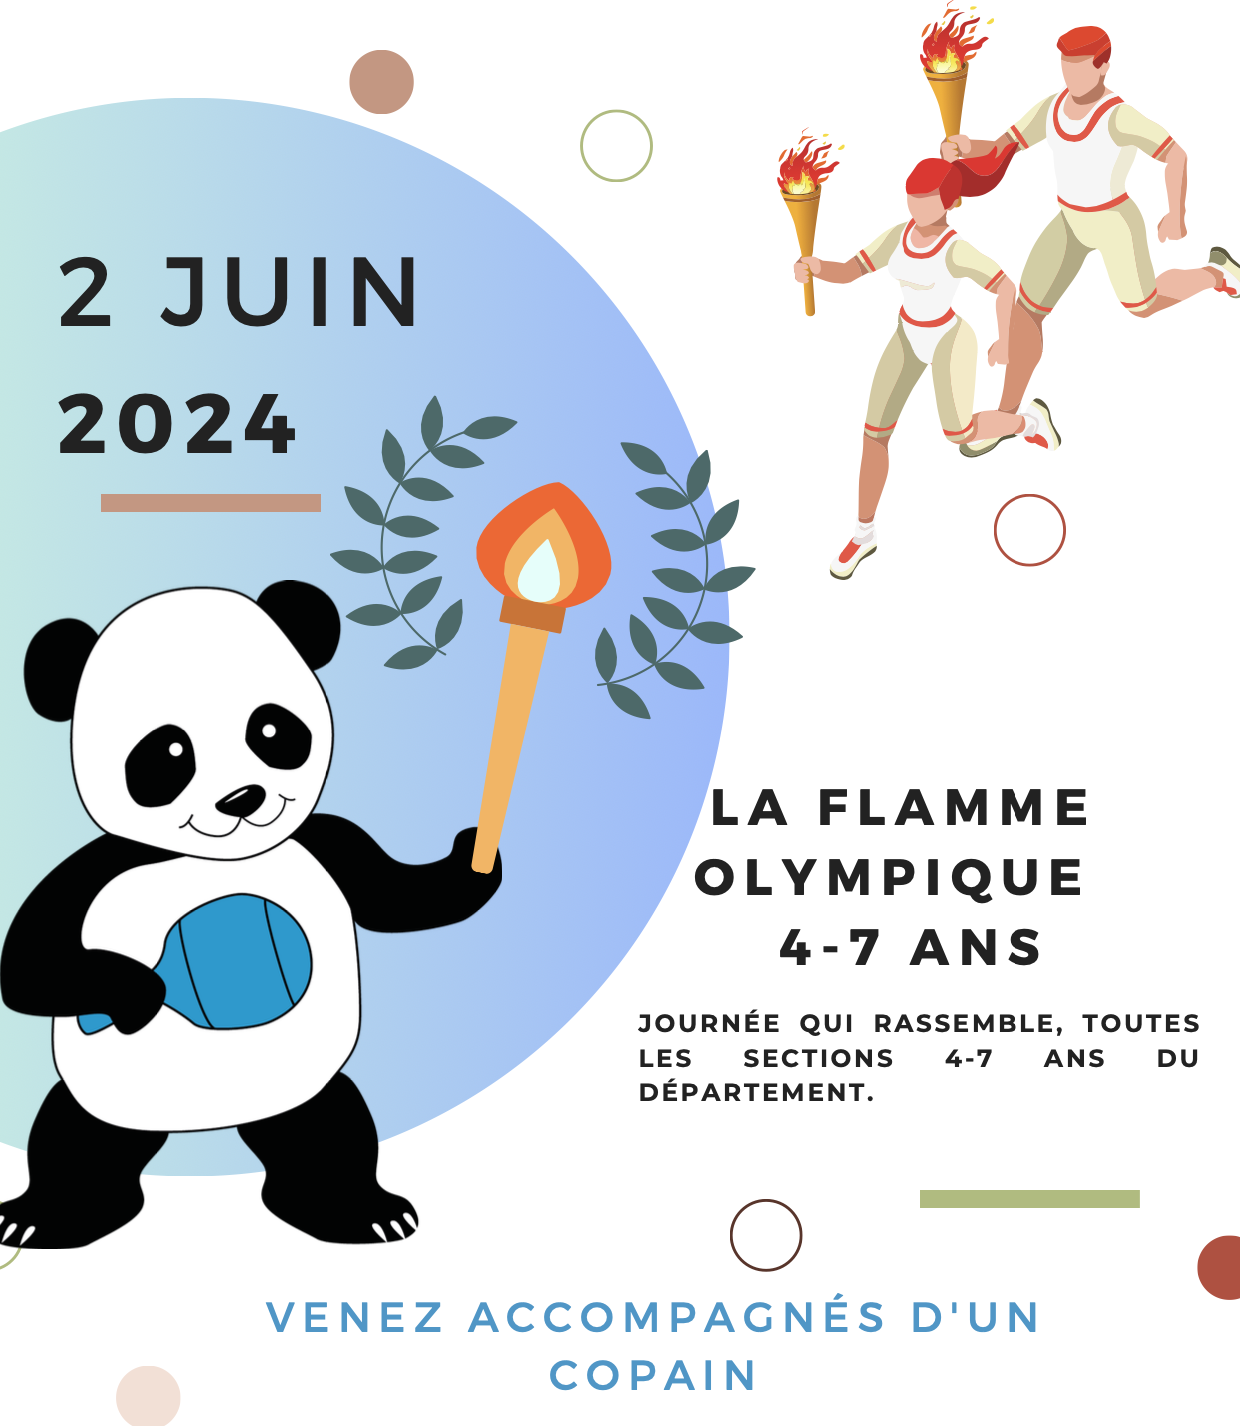 La flamme Olympique 4-7 ans